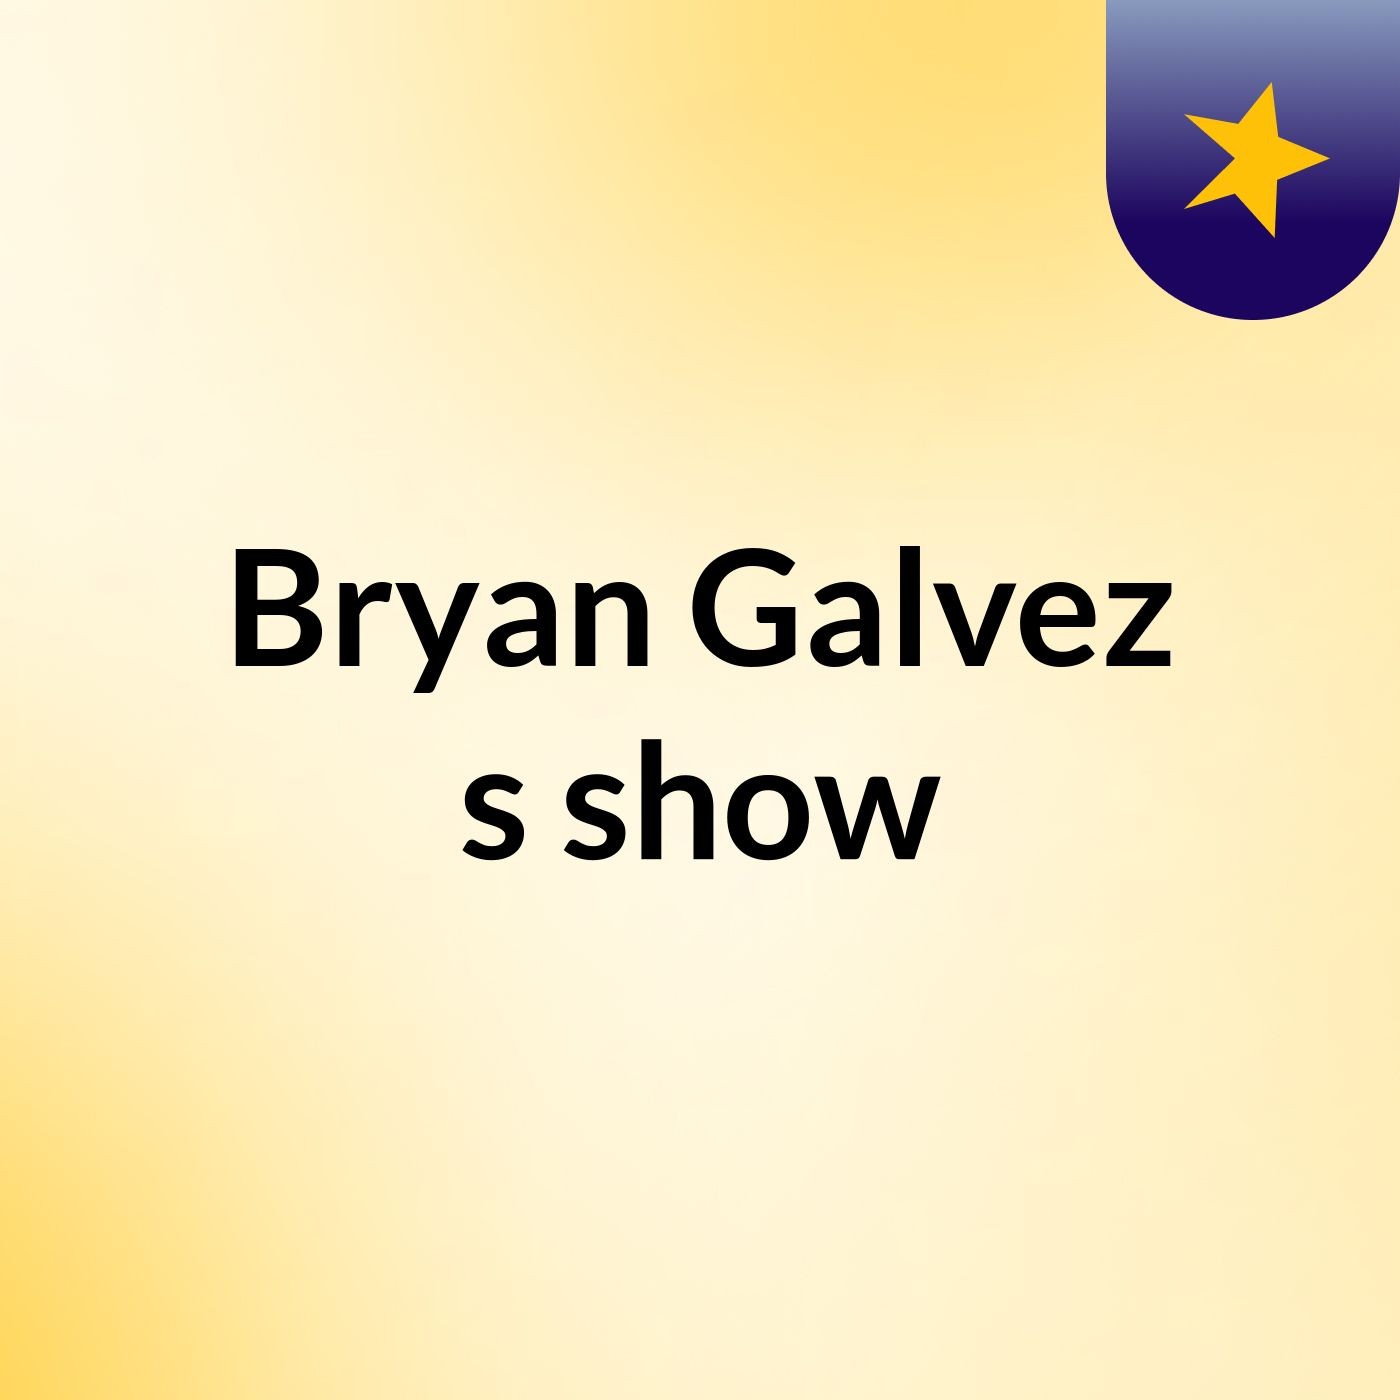 Bryan Galvez's show